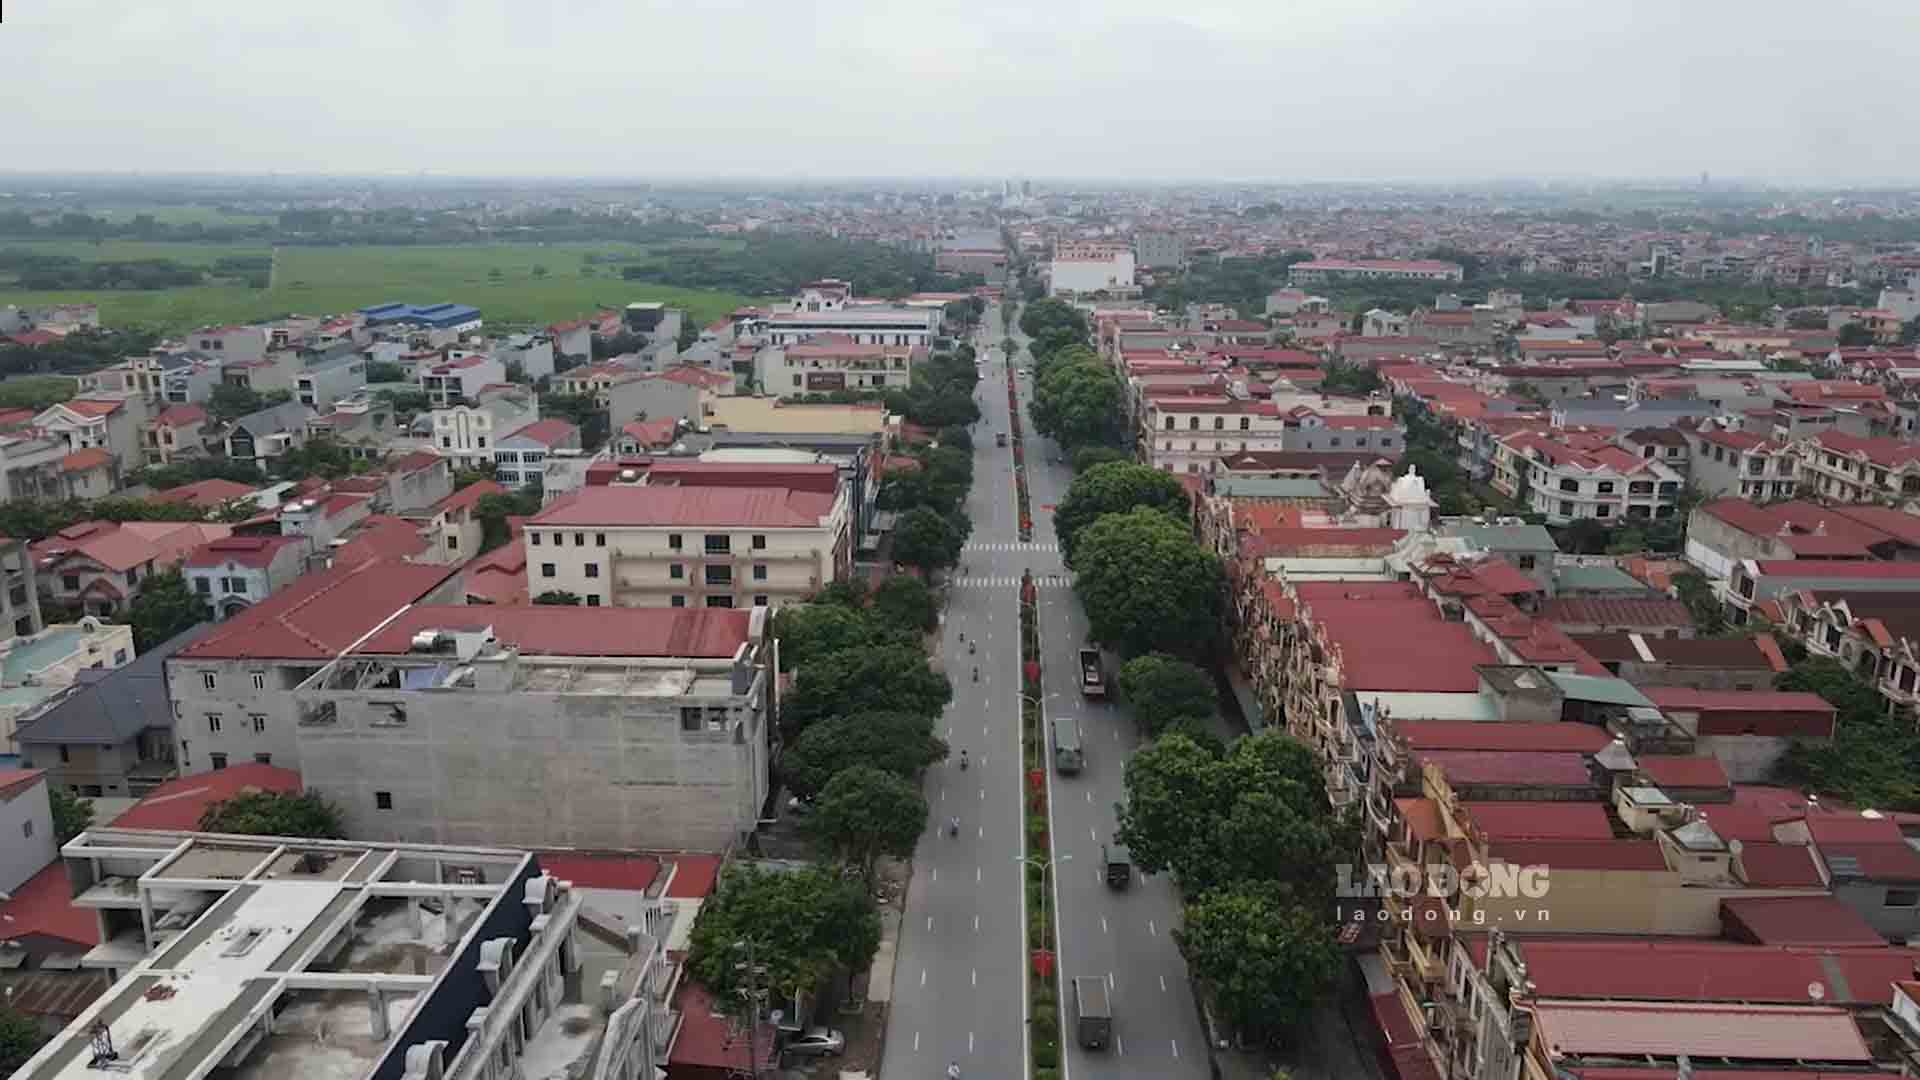 Làng nghề Đồng Kỵ (TP Từ Sơn, Bắc Ninh) - 1 trong những làng nghề nổi tiếng nhất cả nước. Ảnh: Trần Tuấn